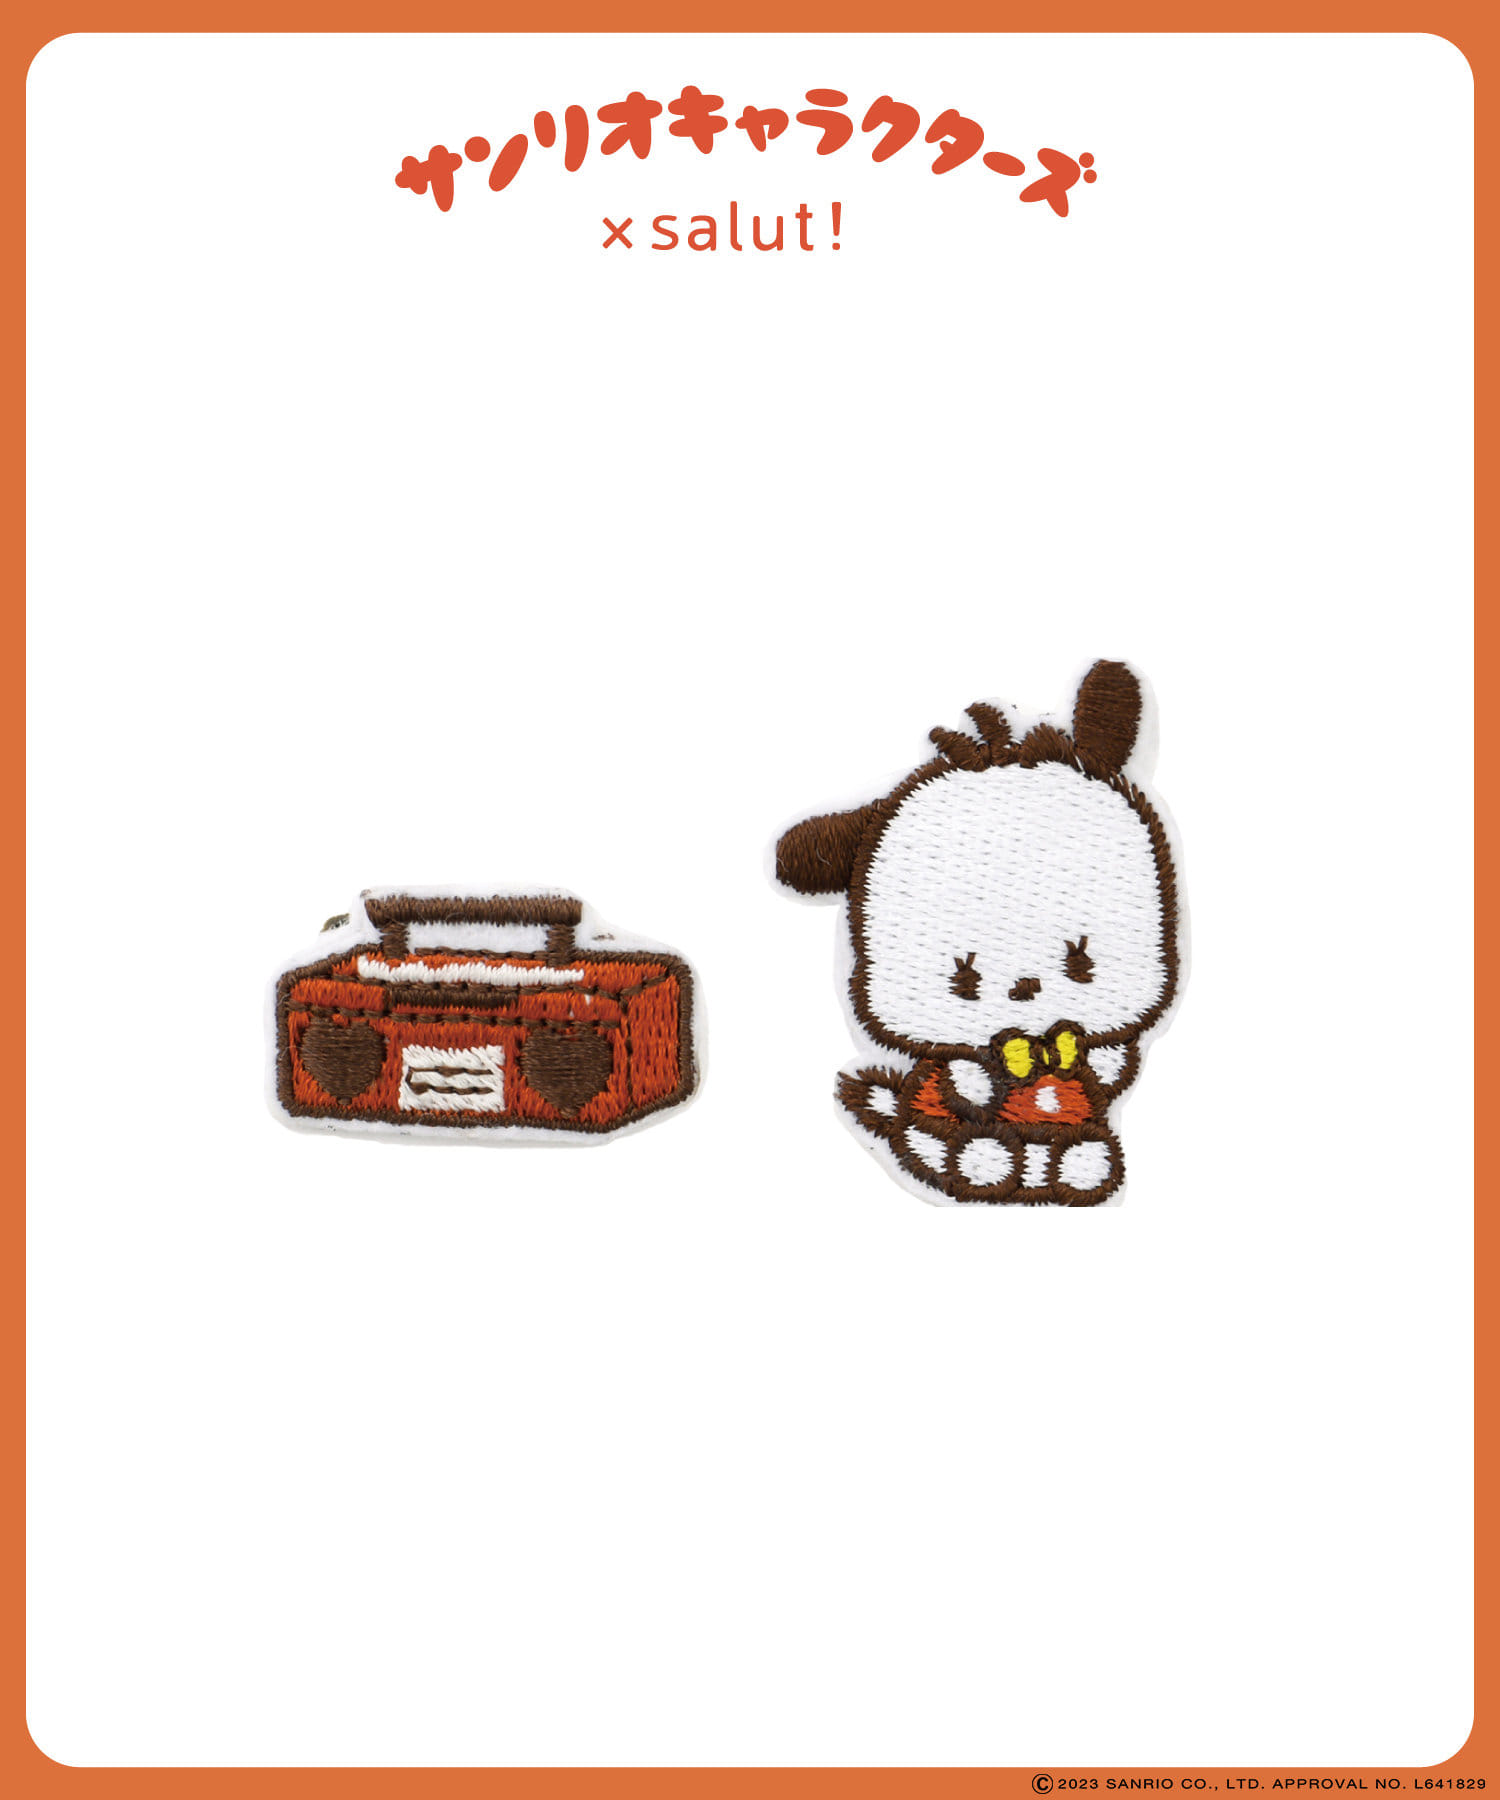 salut!(サリュ) 【サンリオキャラクターズ】刺繍ブローチセット